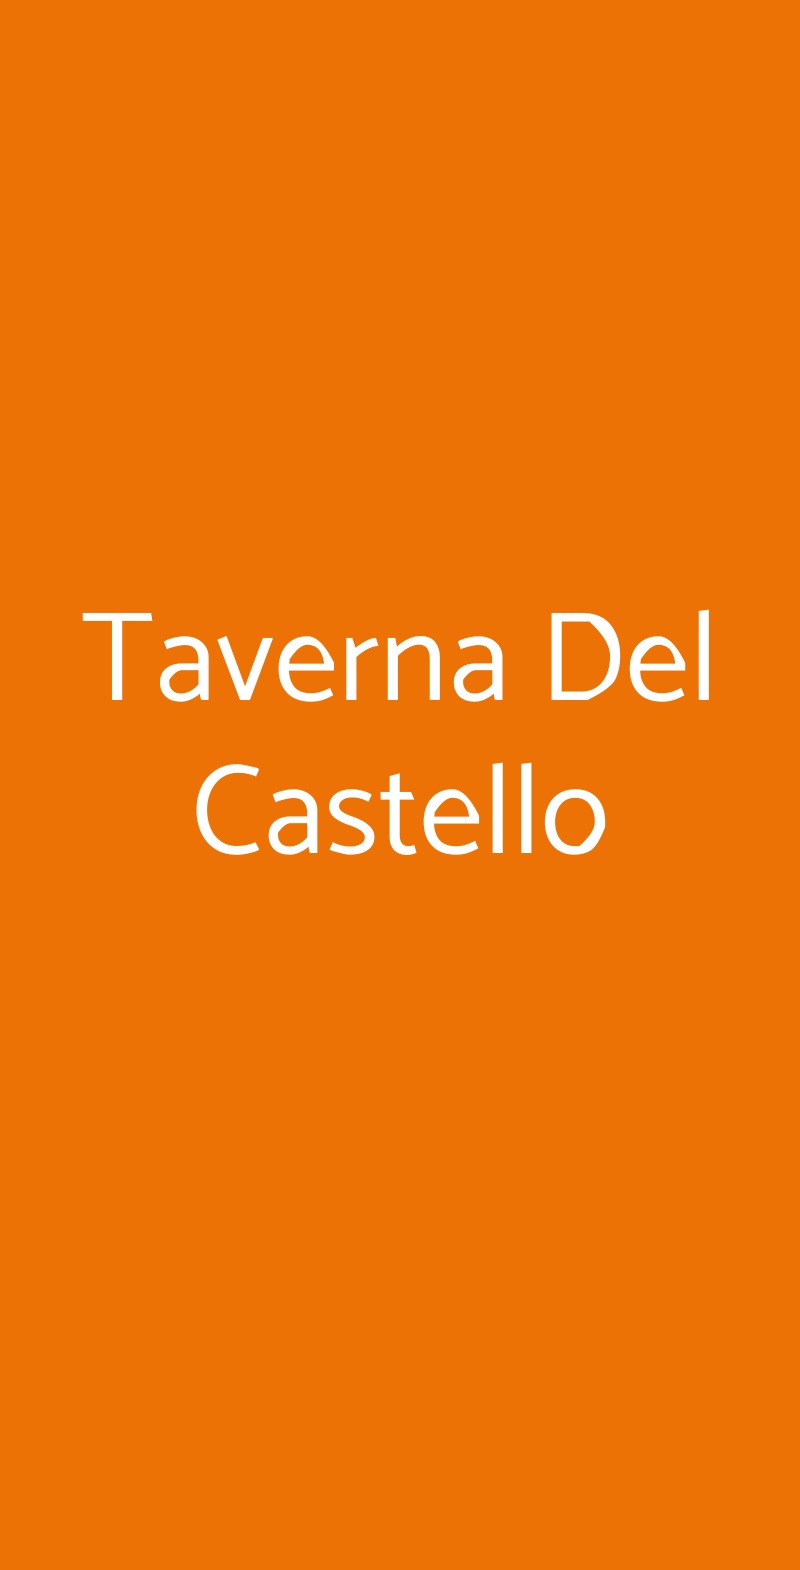 Taverna Del Castello Langhirano menù 1 pagina